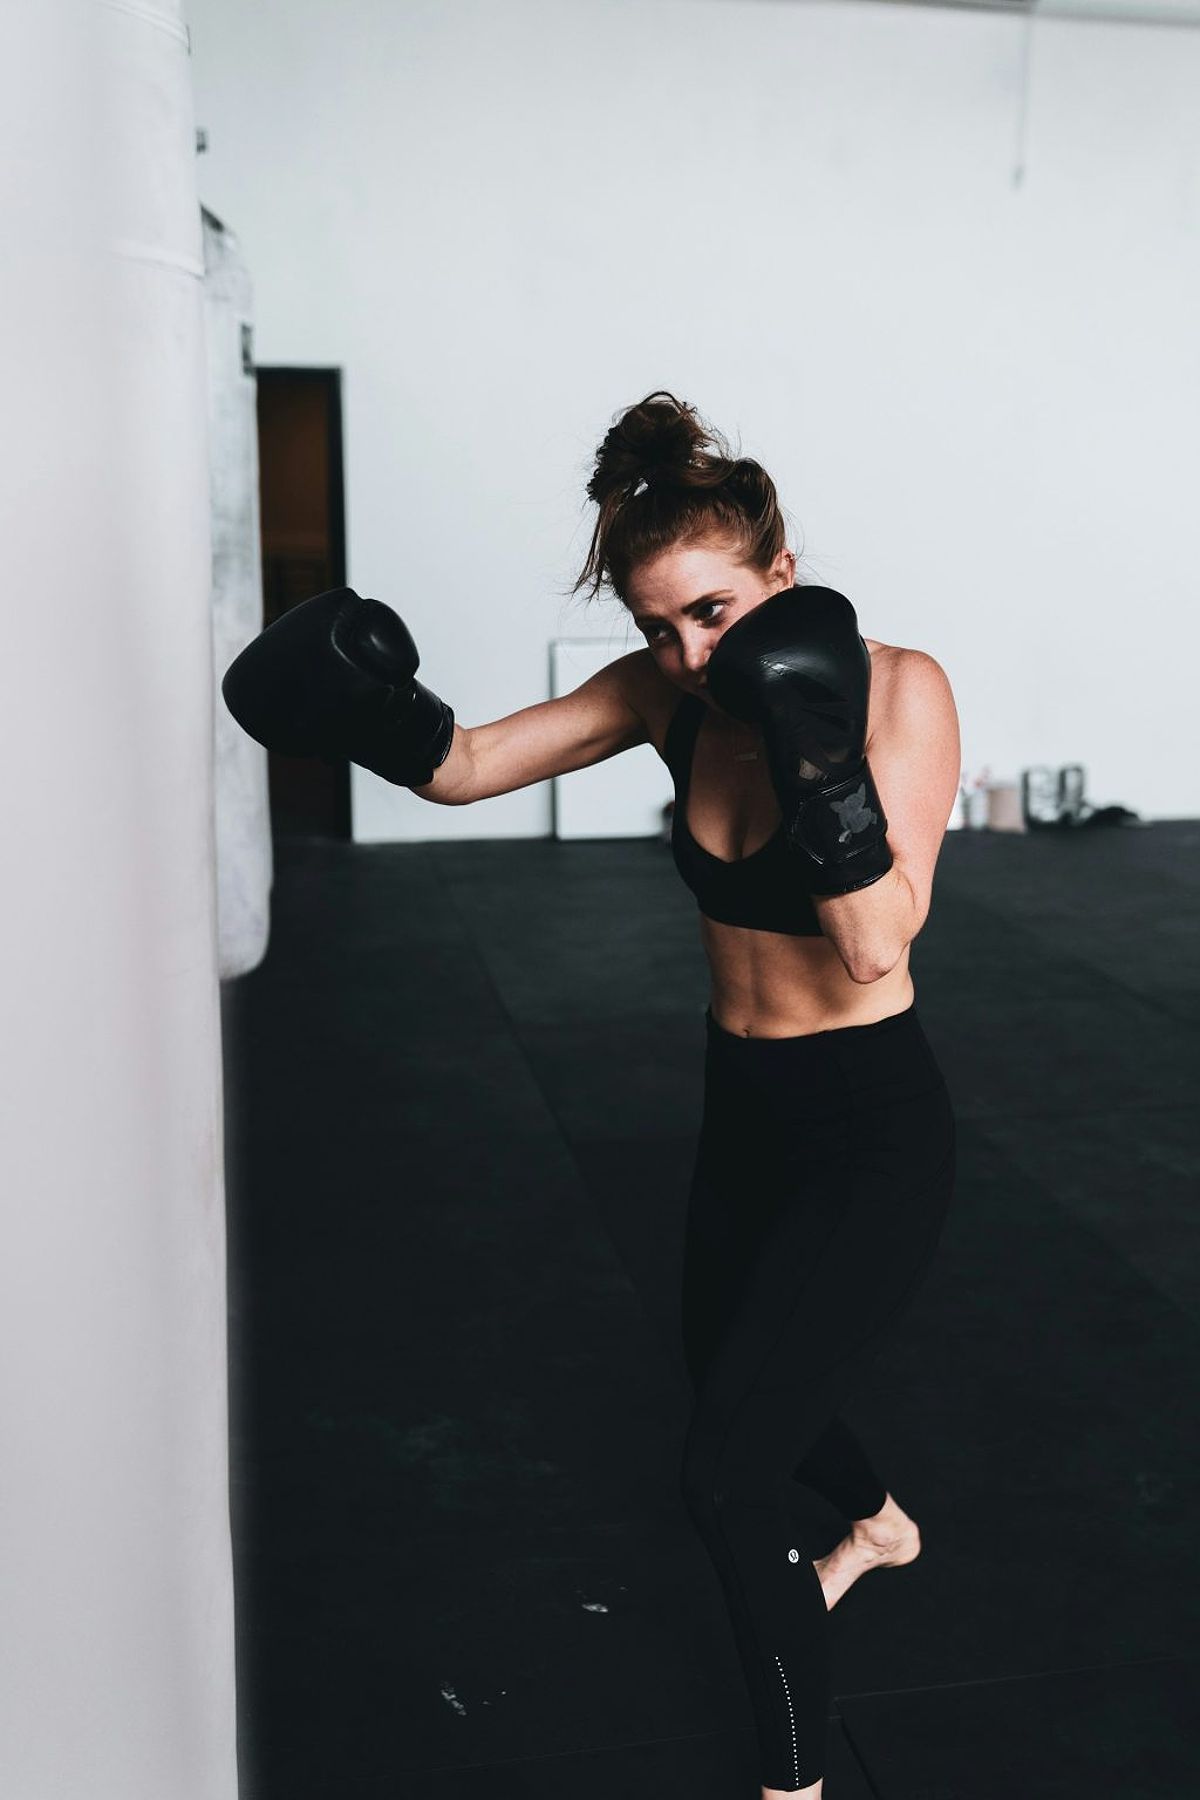 Boxing cho phụ nữ: Cách tập luyện và lợi ích - -911526758